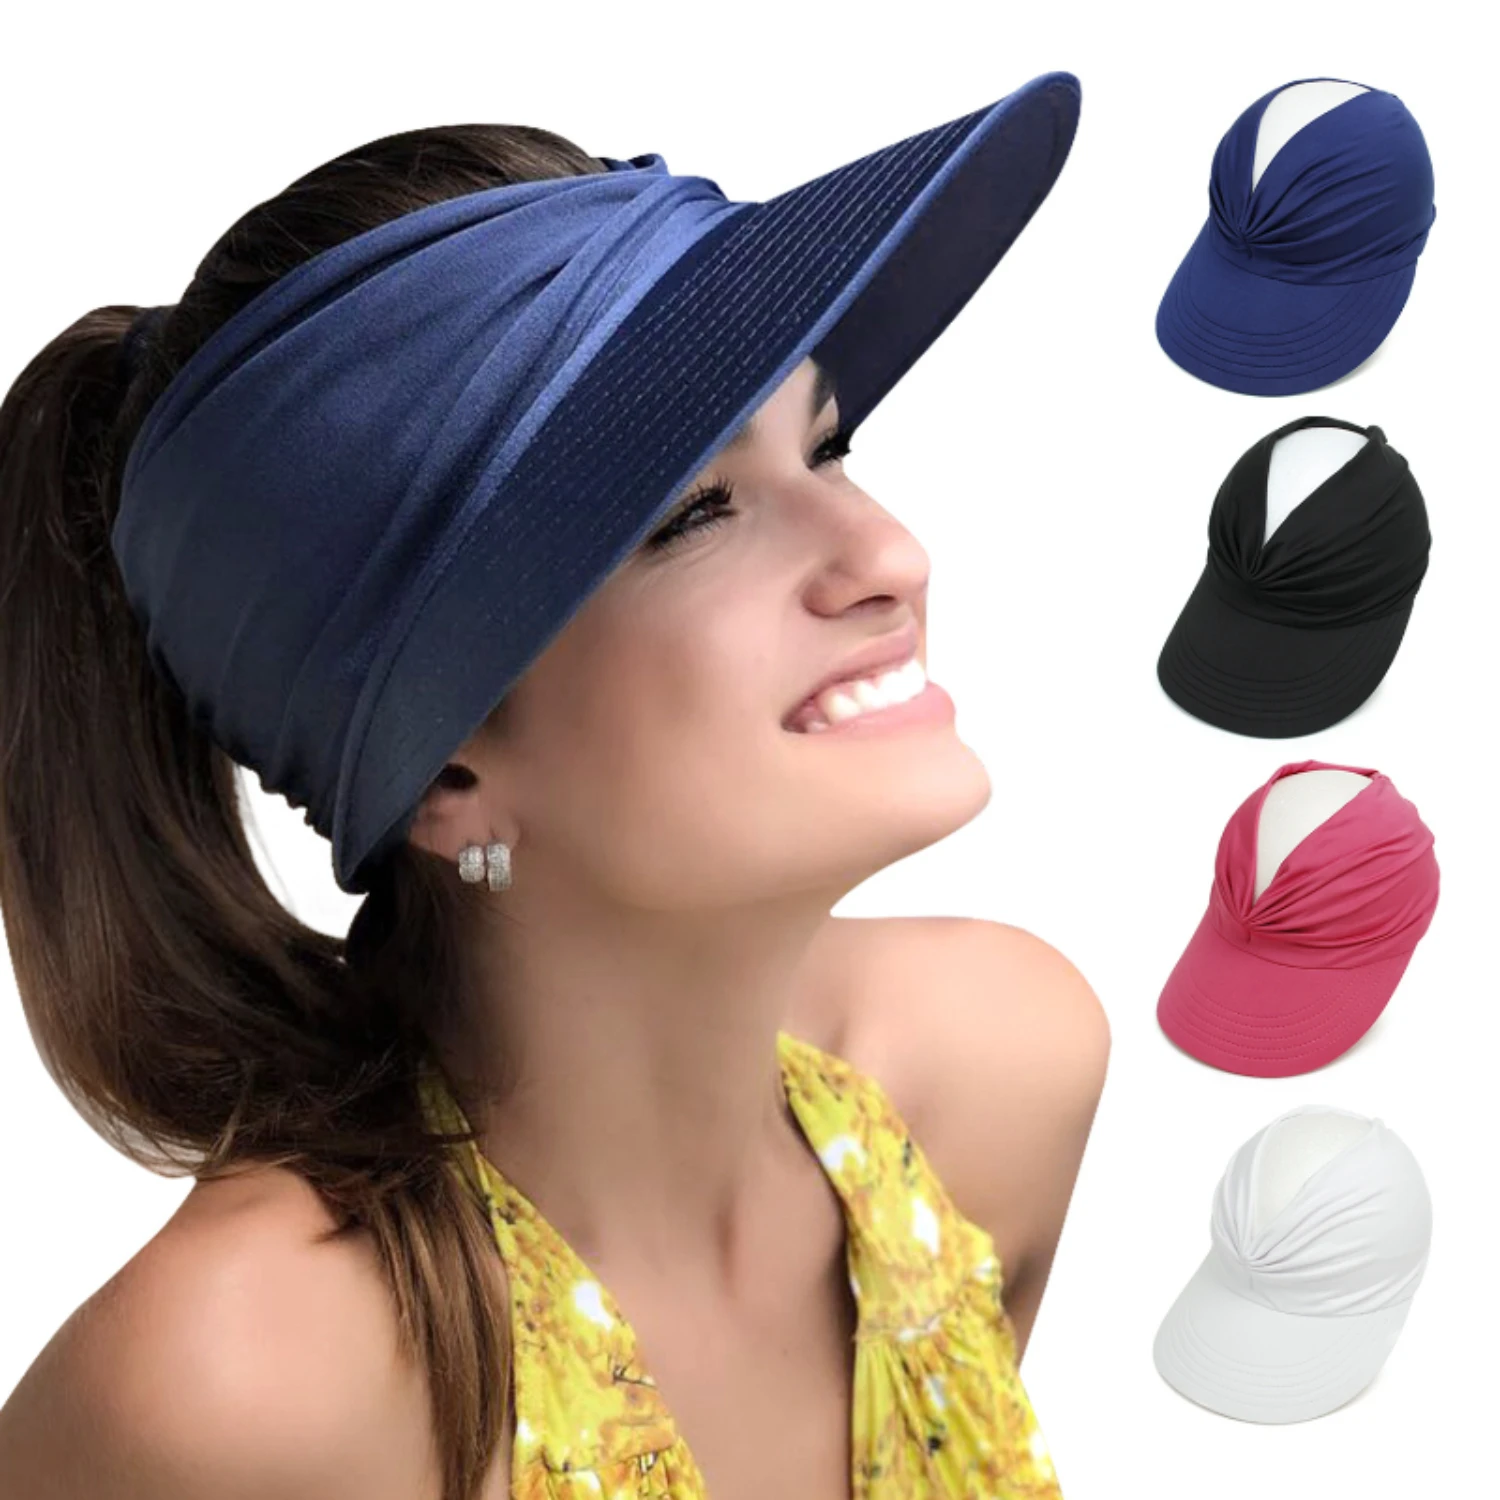 

Шляпа Женская эластичная с вырезами, Пляжный головной убор от солнца, с большим козырьком, для занятий спортом на открытом воздухе, в стиле кэжуал, на лето